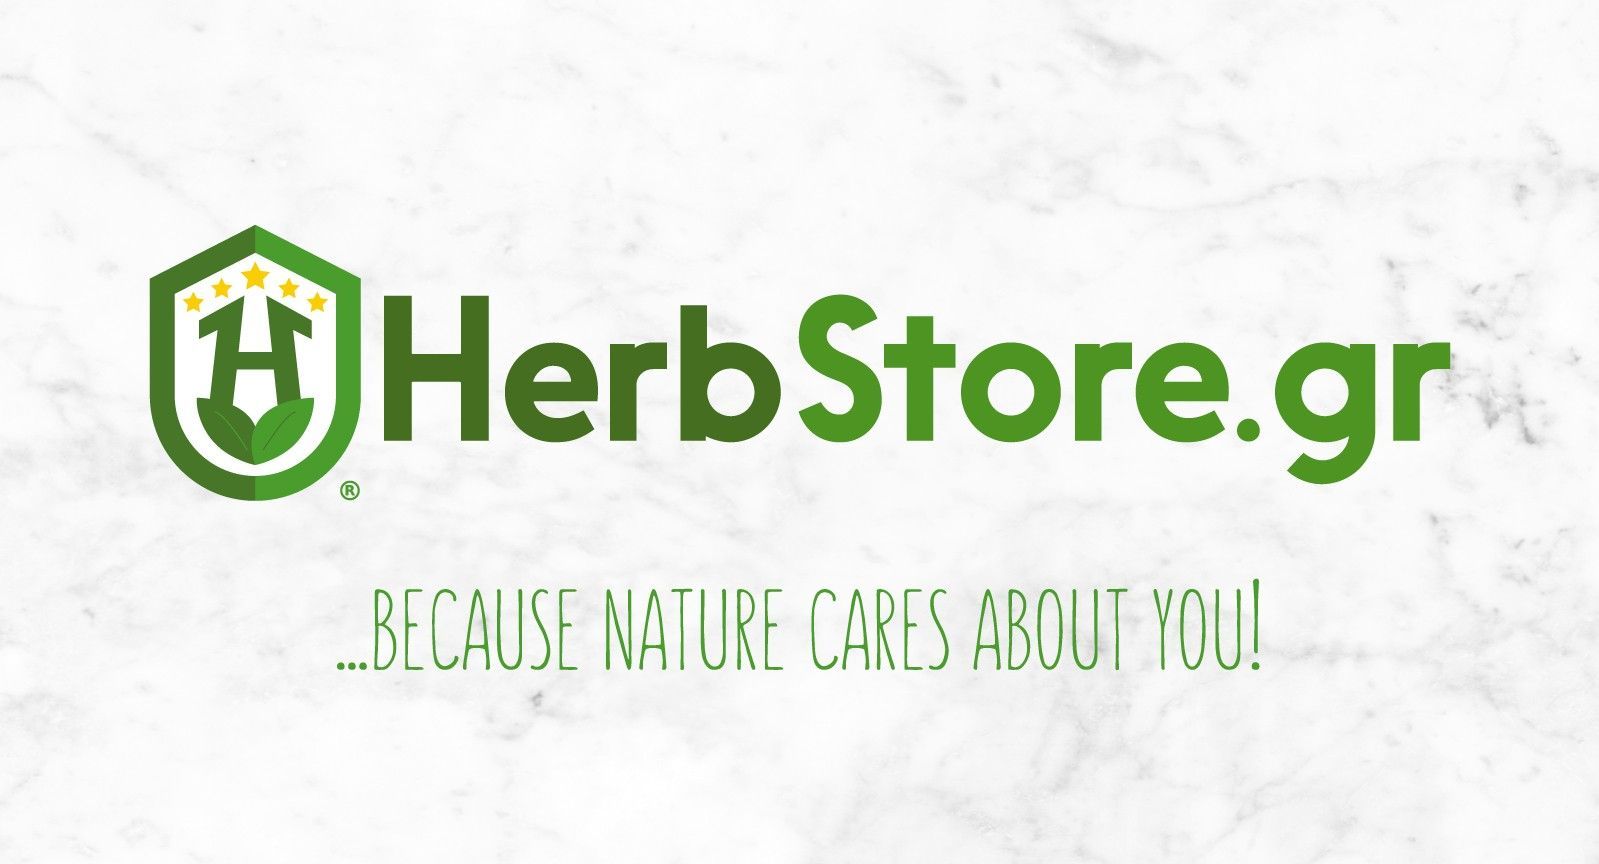 HerbStore